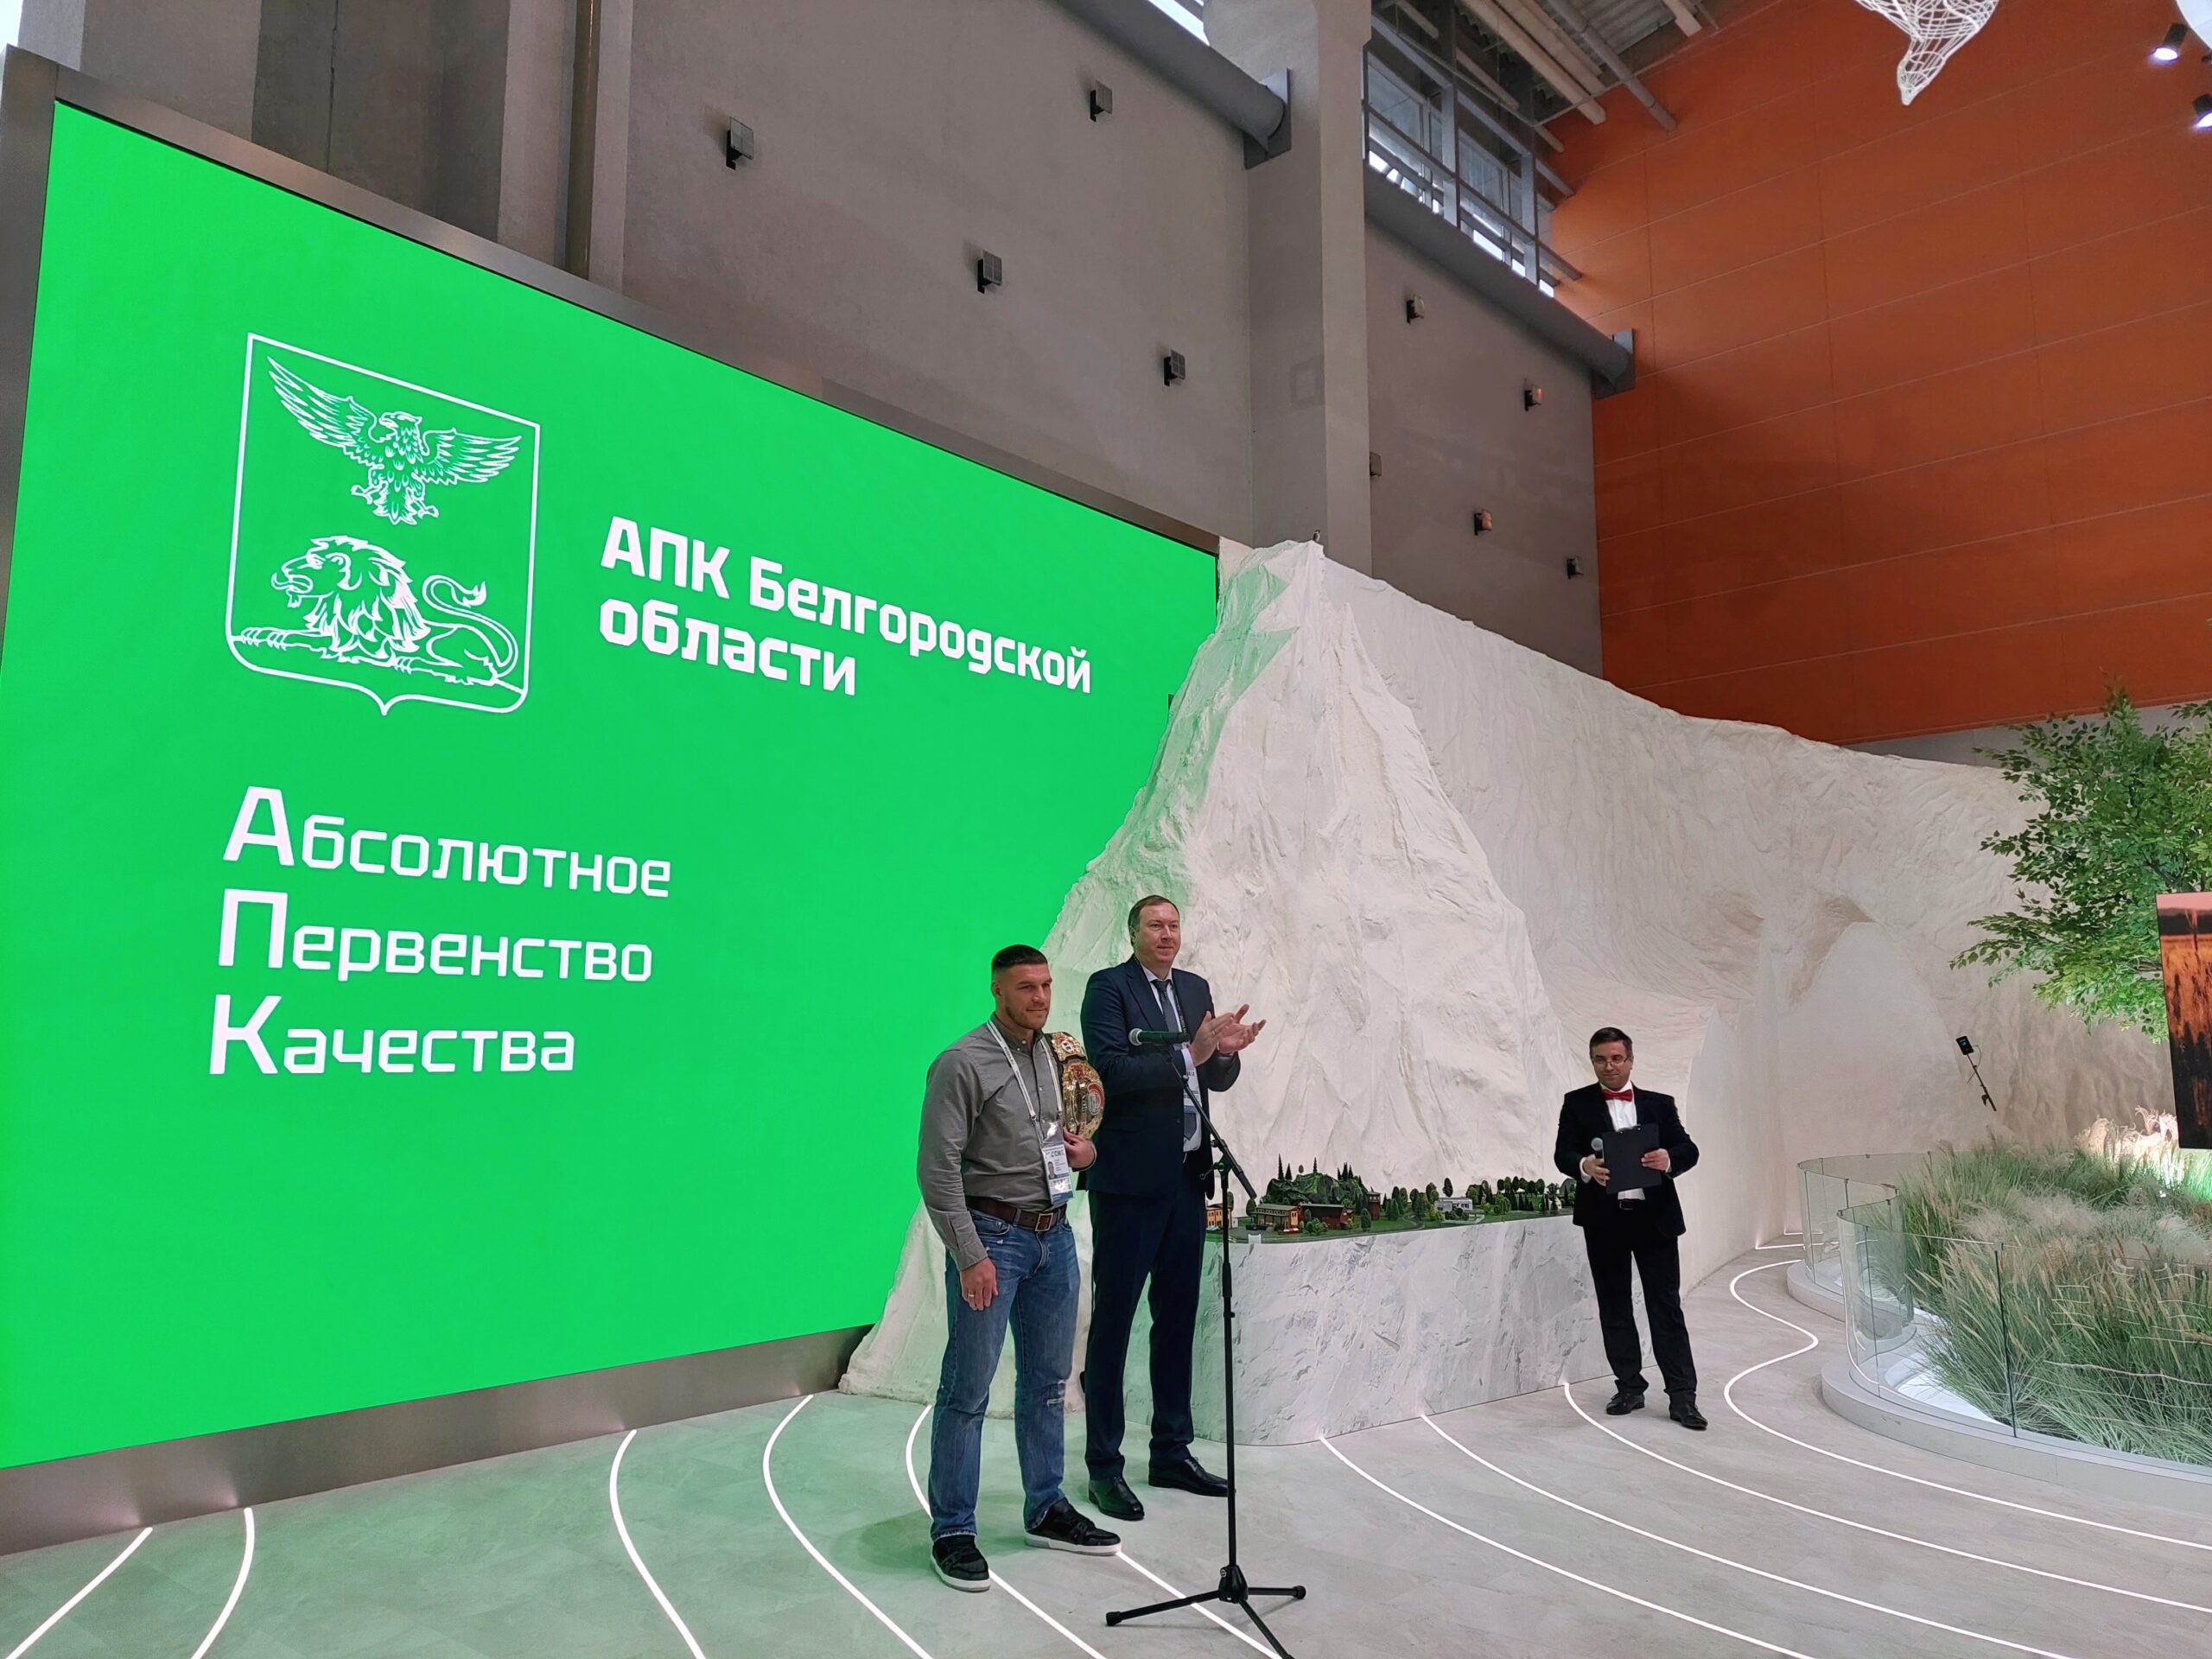  На Международной выставке-форуме «Россия» проходят Дни АПК Белгородской области